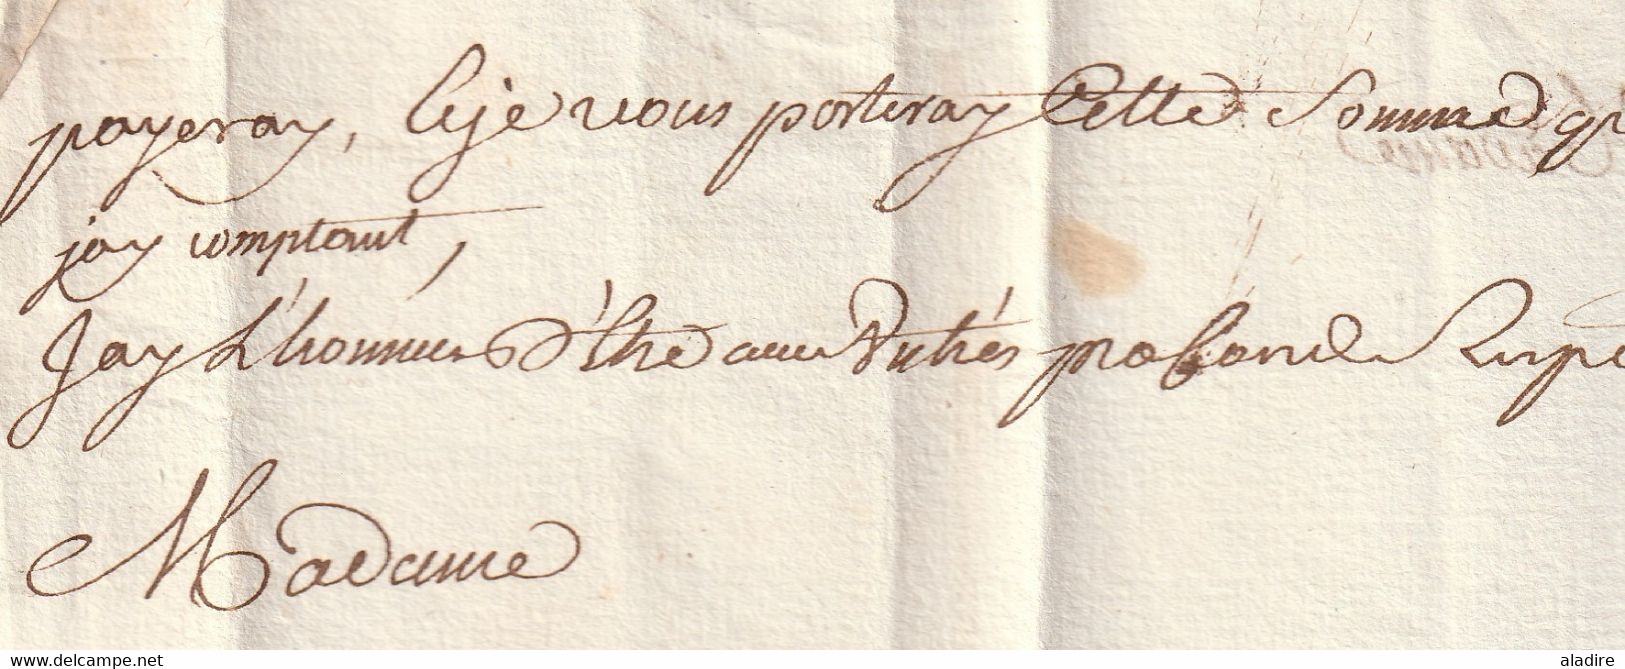 1751 - Lettre pliée avec correspondance de 2 pages de SAINT HILLAIRE Hilaire vers NIVERVILLE Villemaury, Eure-et-Loir